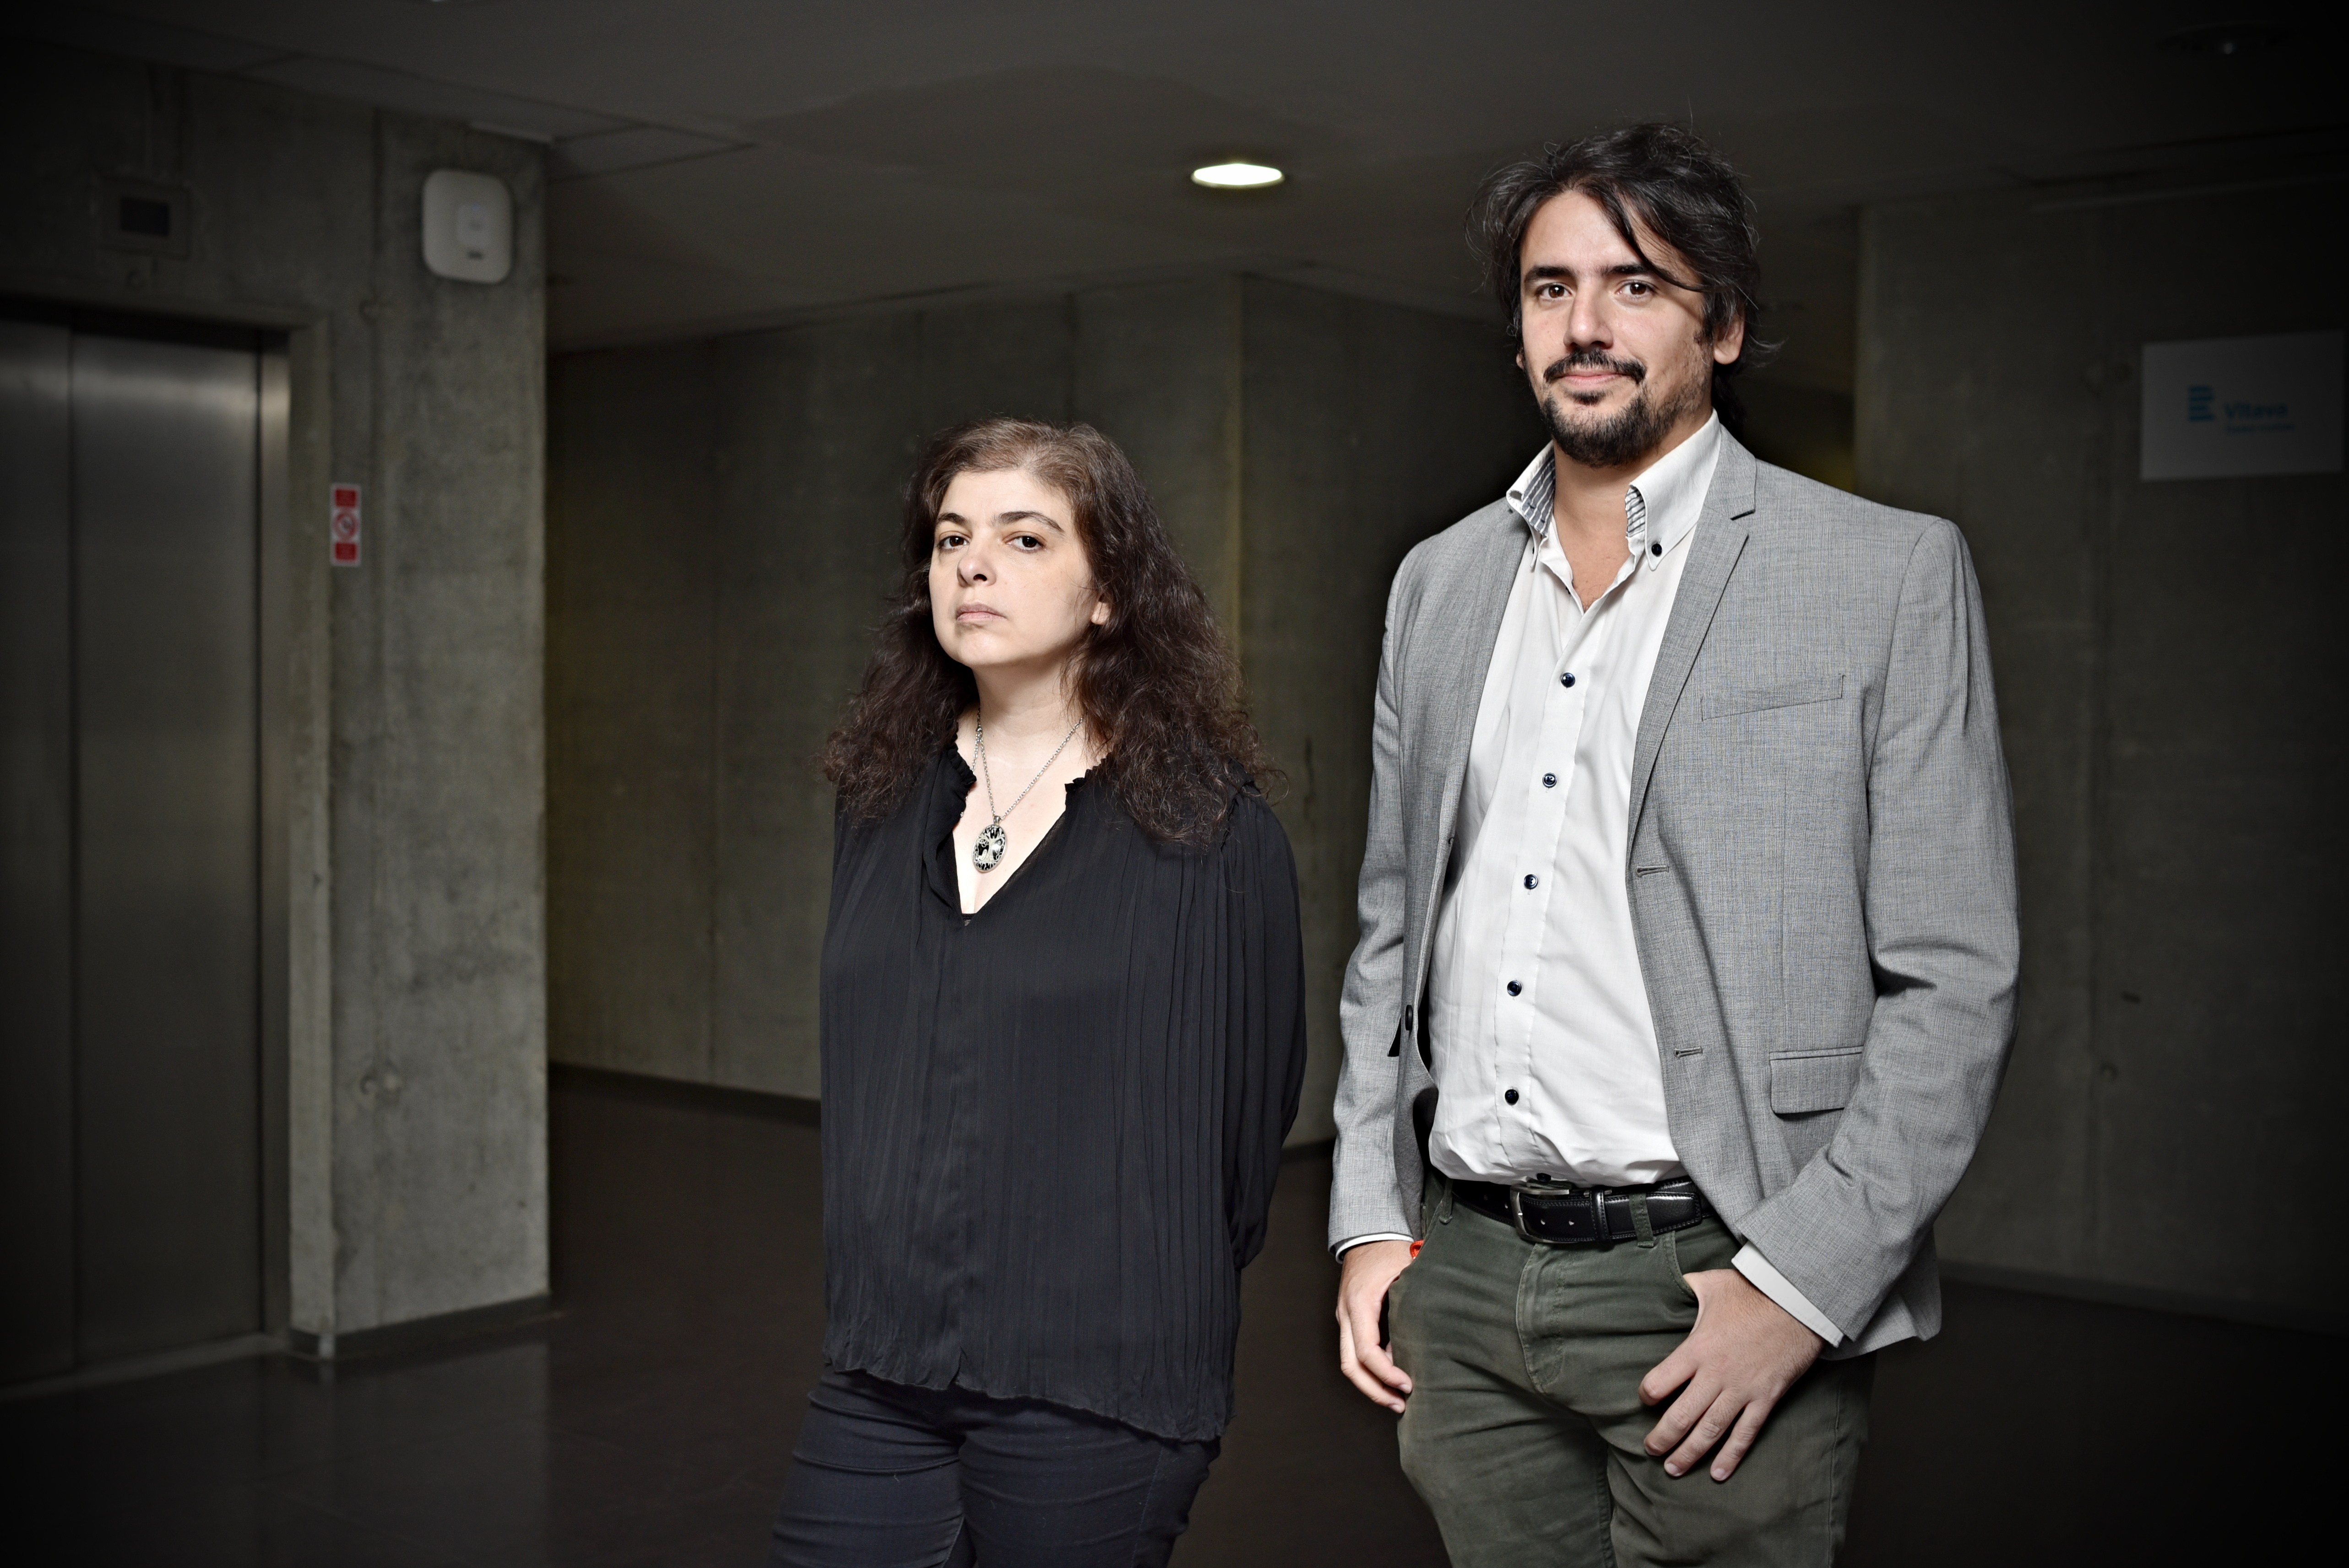 Prozaička a novinářka Mariana Enriquez a básník Juan Pablo Bertazza